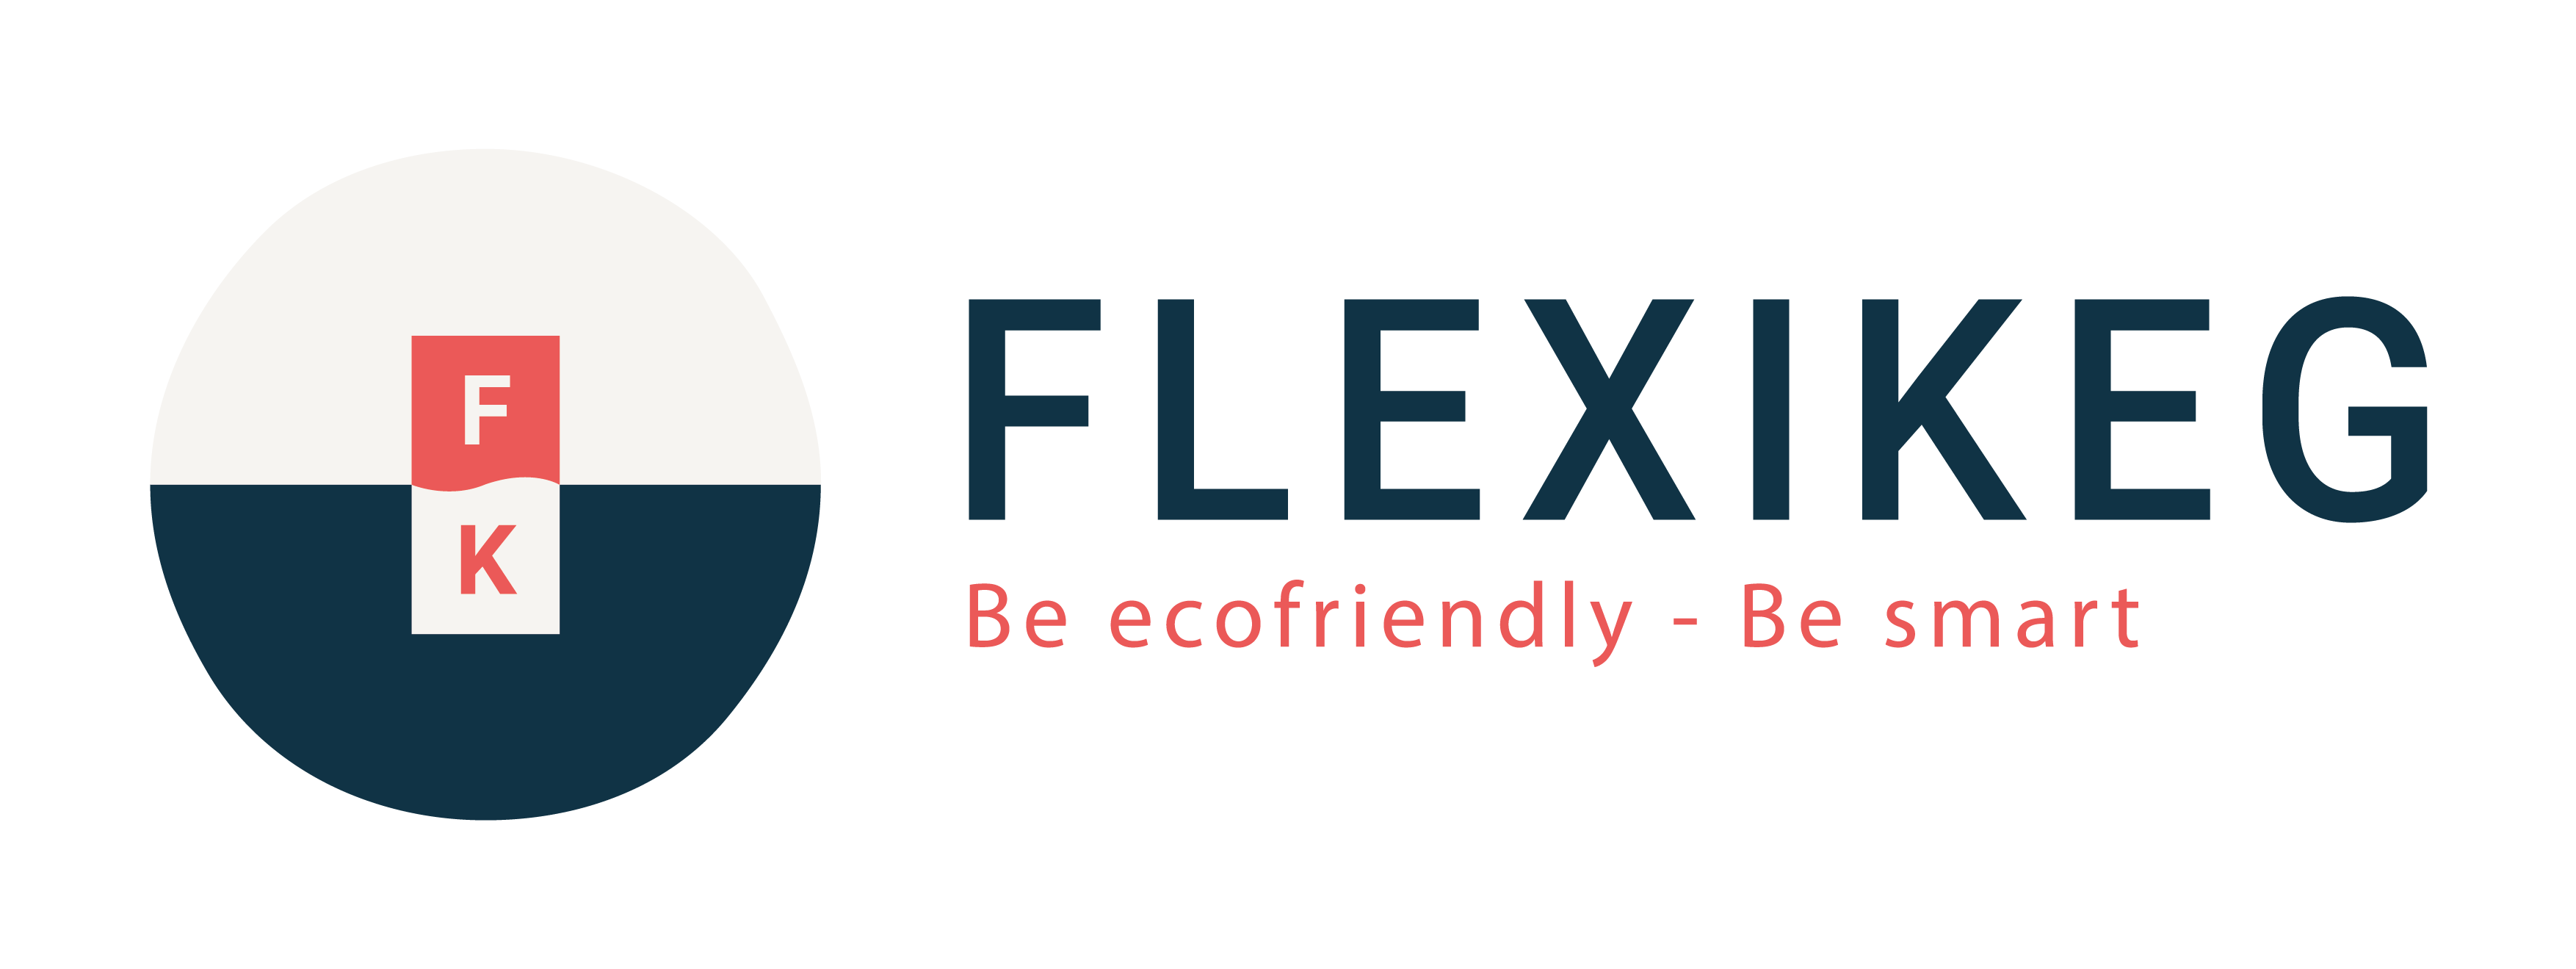 Flexikeg